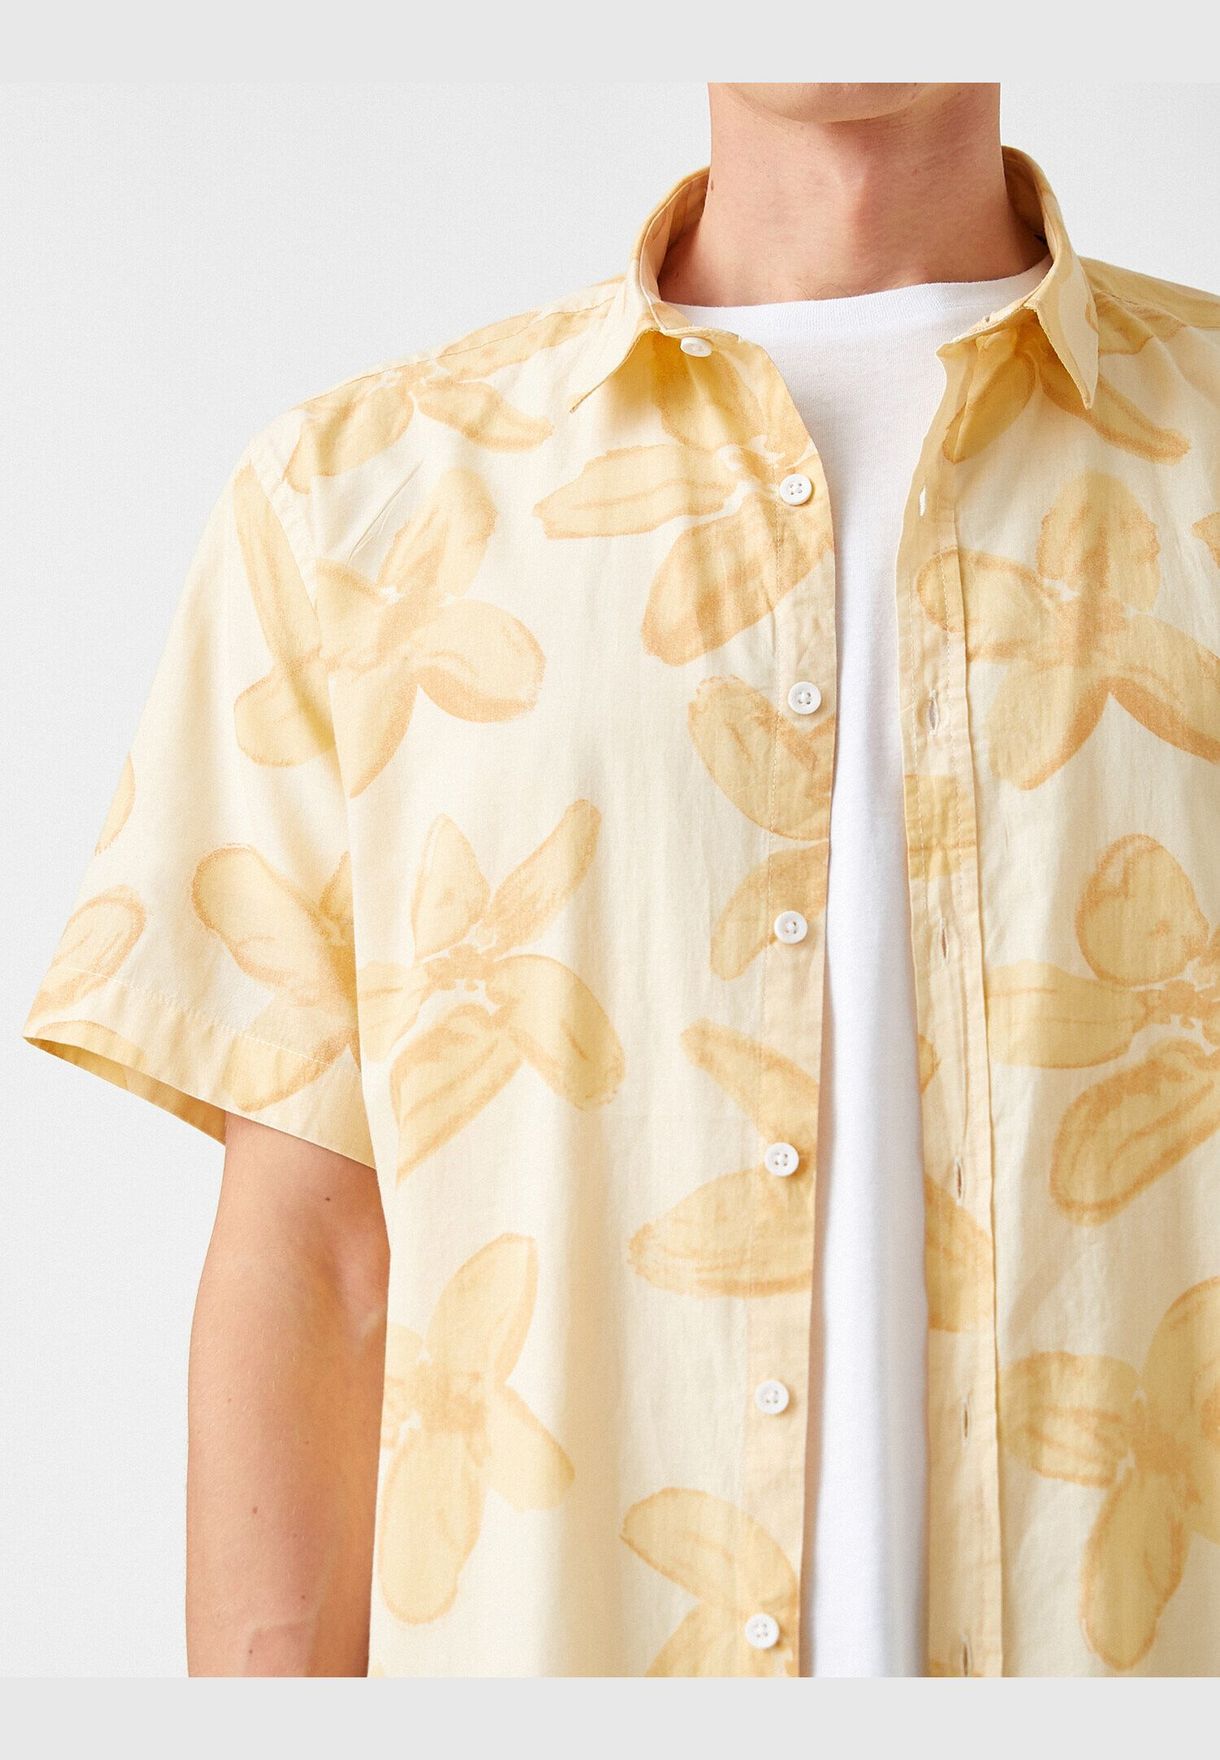 Floral Patterned Short Sleeve Shirt